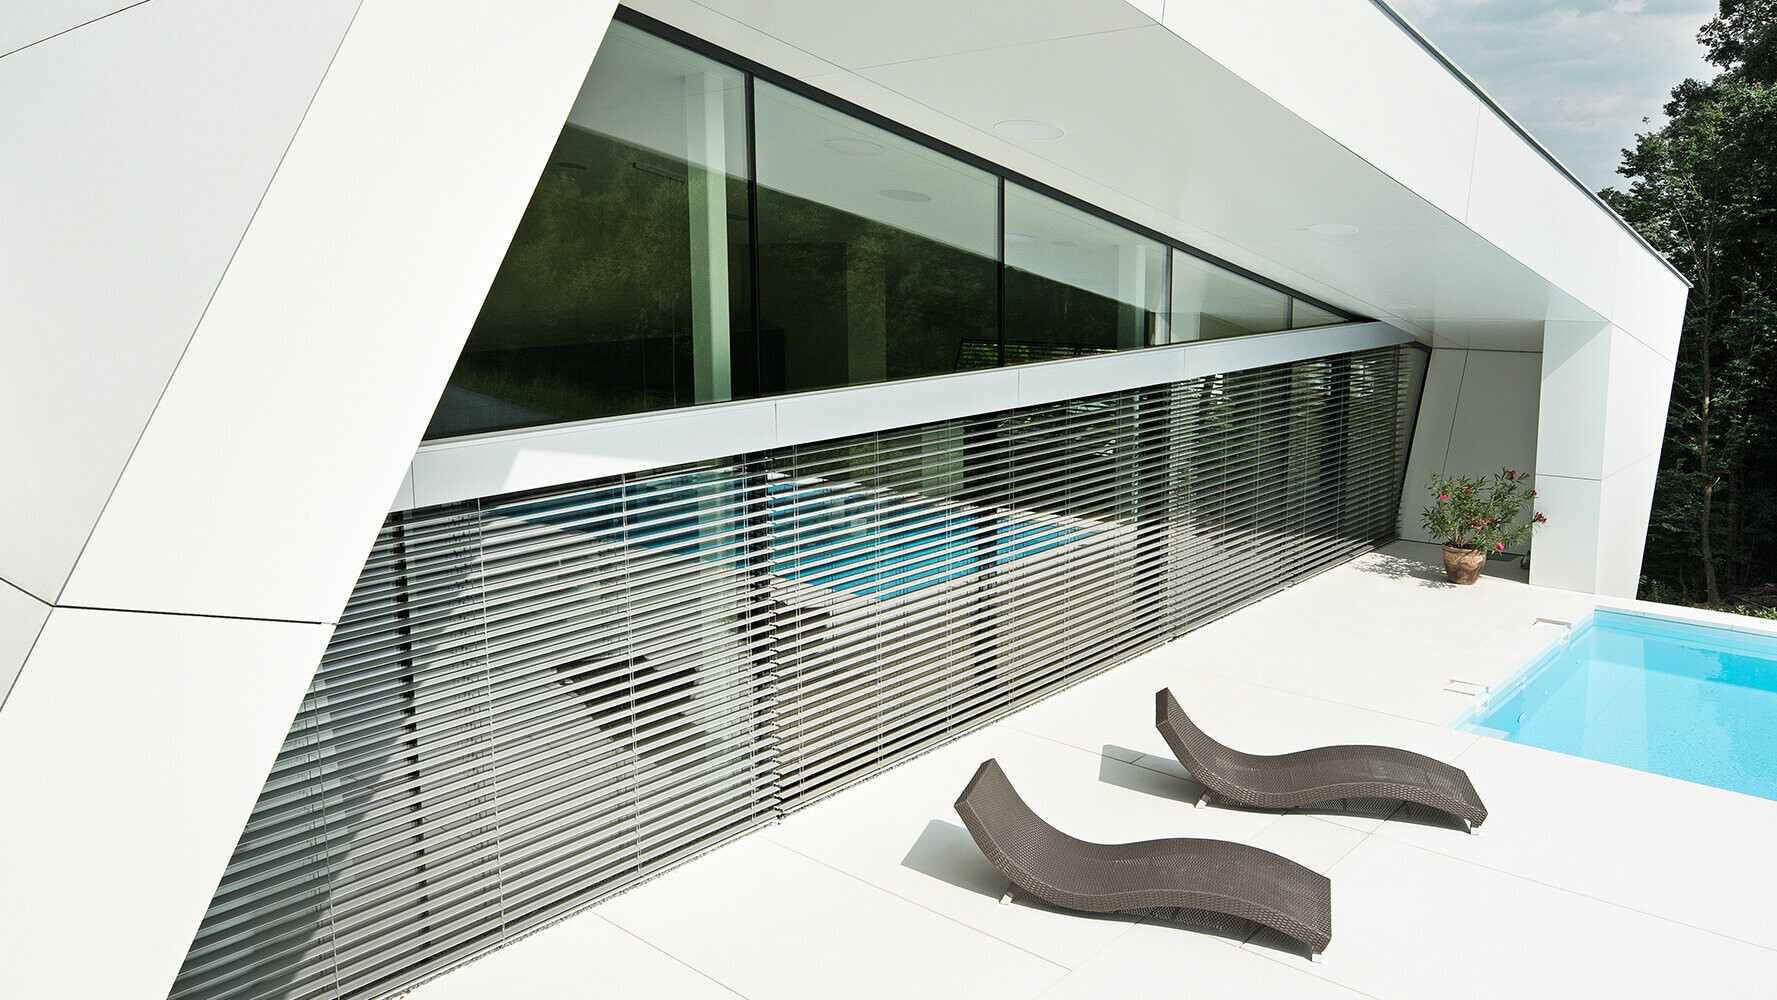 Modernes Einfamilienhaus mit Swimmingpool. Die Fassade des Gebäudes ist mit Verbundplatten in Reinweiß verkleidet.